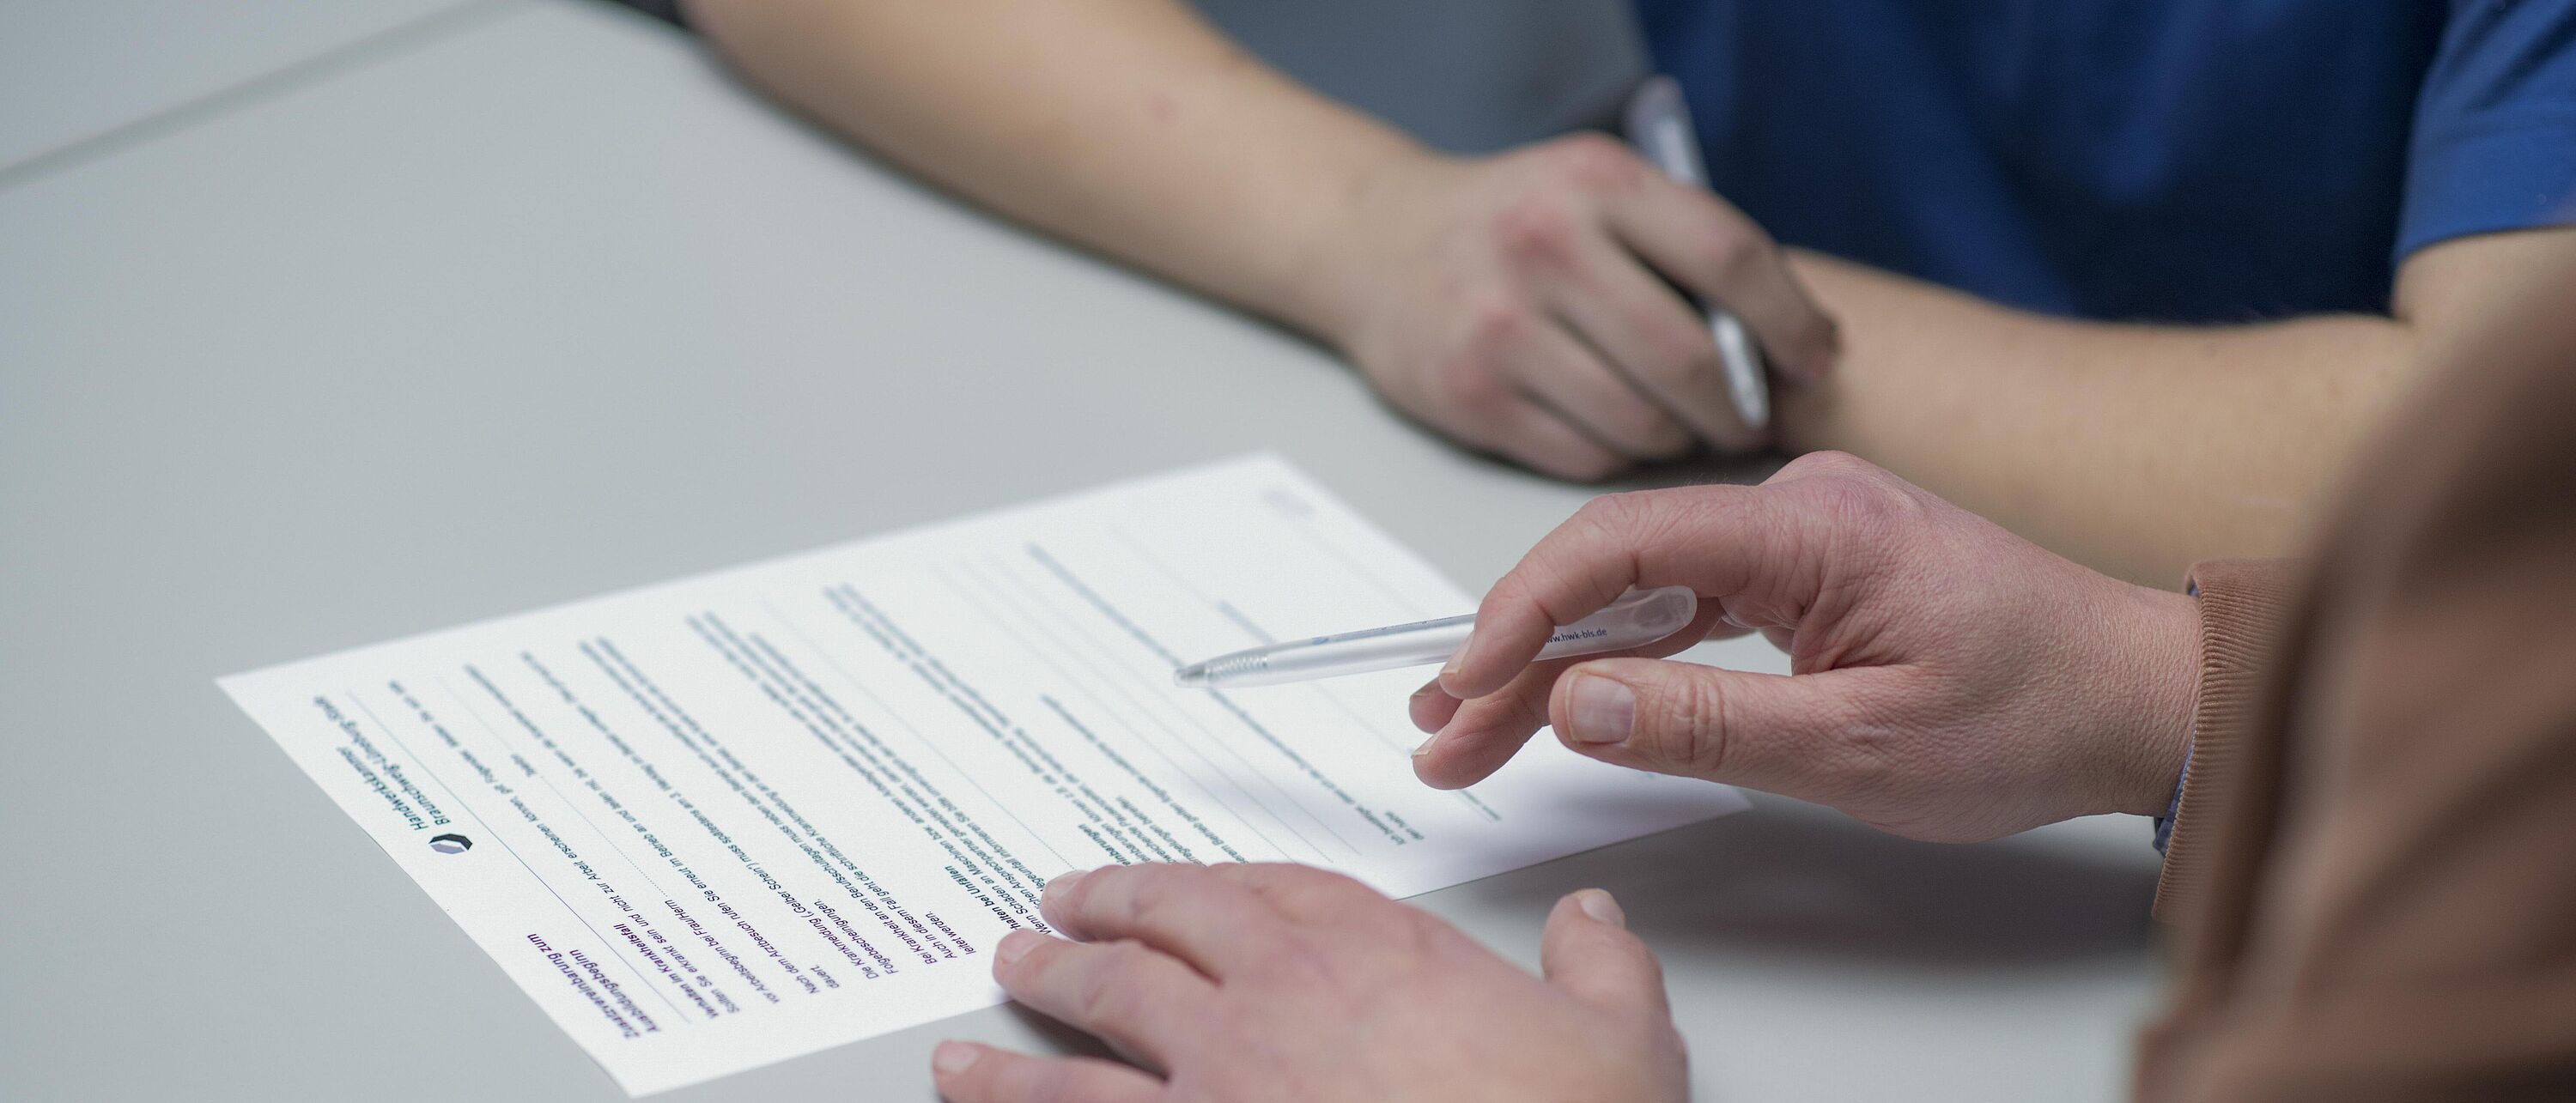 Makroaufnahme: Zwei Personen sitzen an einem Schreibtisch, vor sich einen Vertrag den eine Person unterschreiben will während die andere zeigt wo das Unterschriftenfeld ist.